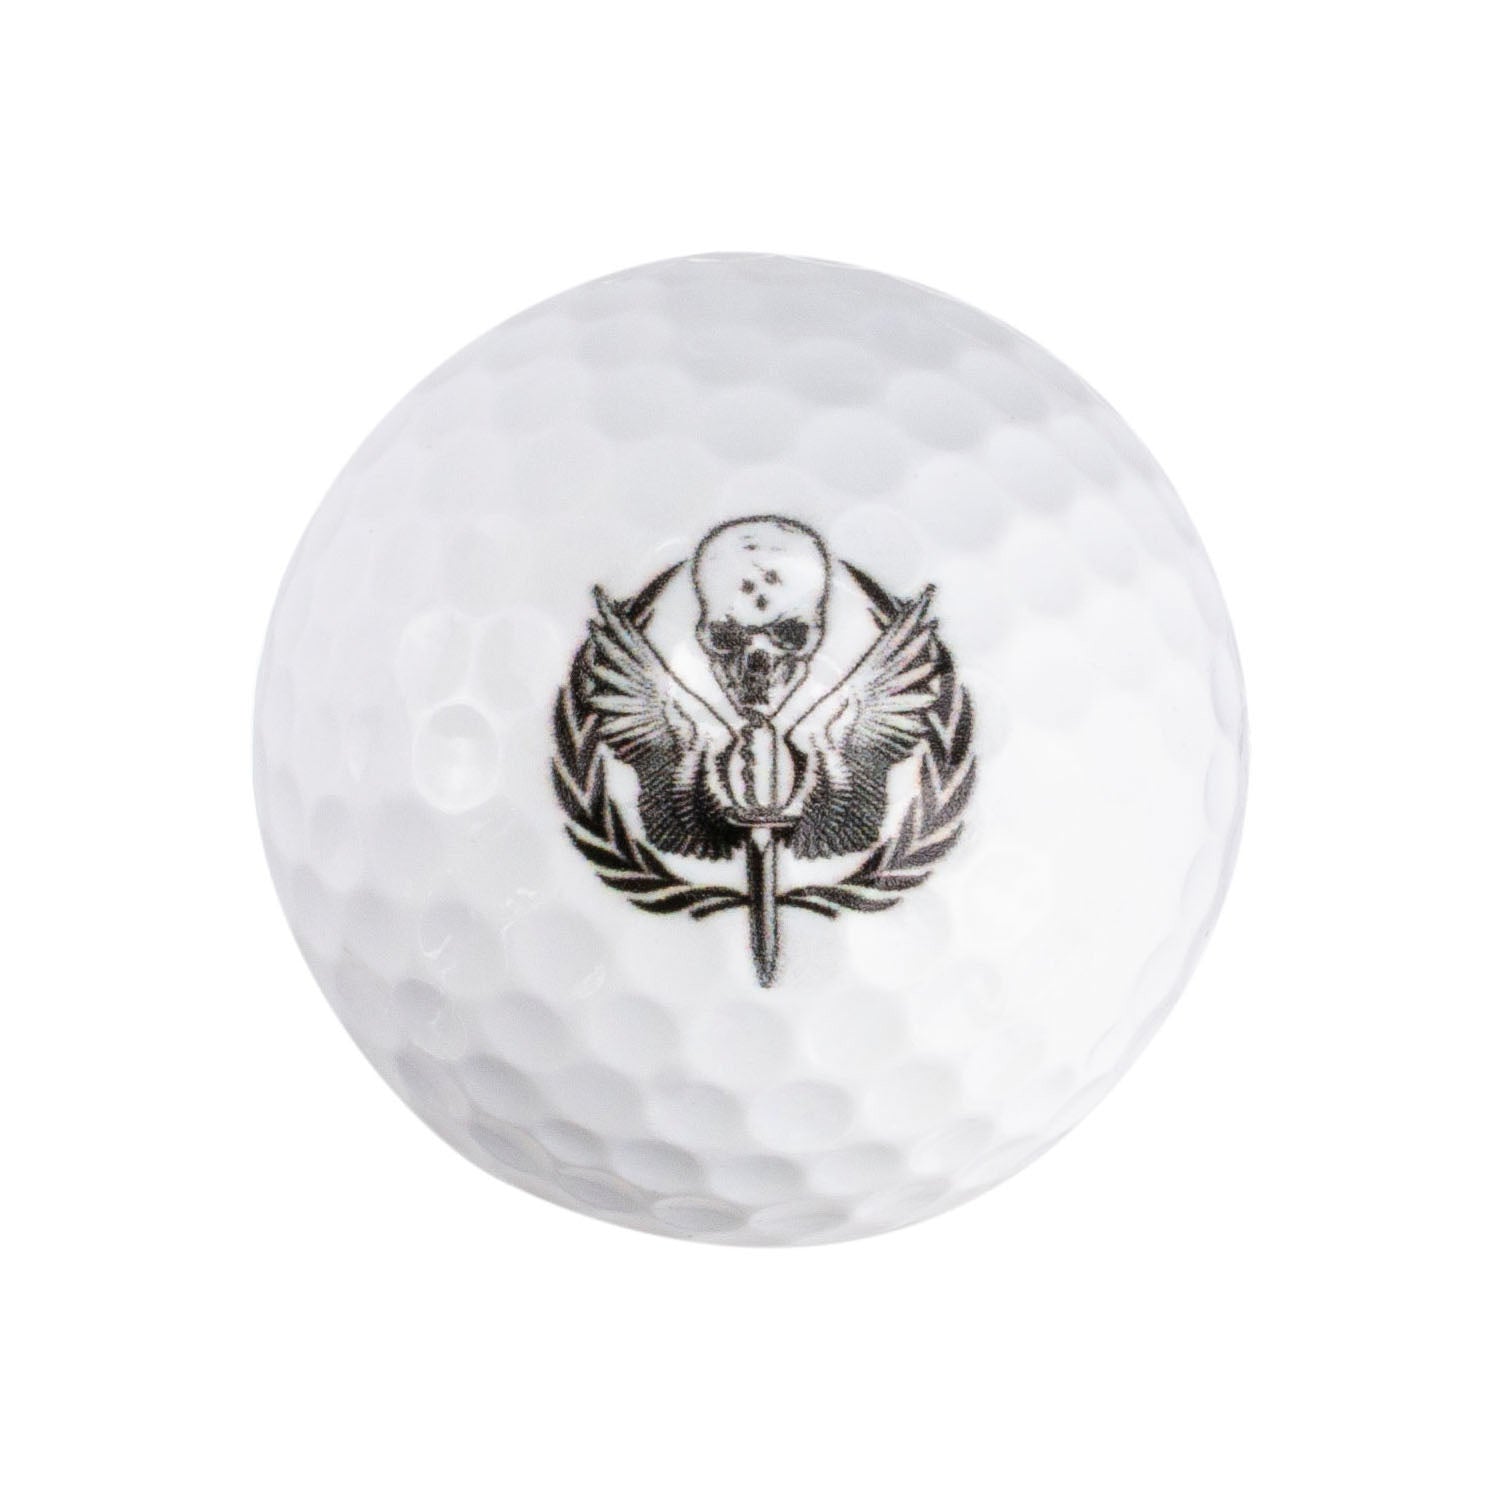 Modern Warfare II Golf Balls - First Ball View